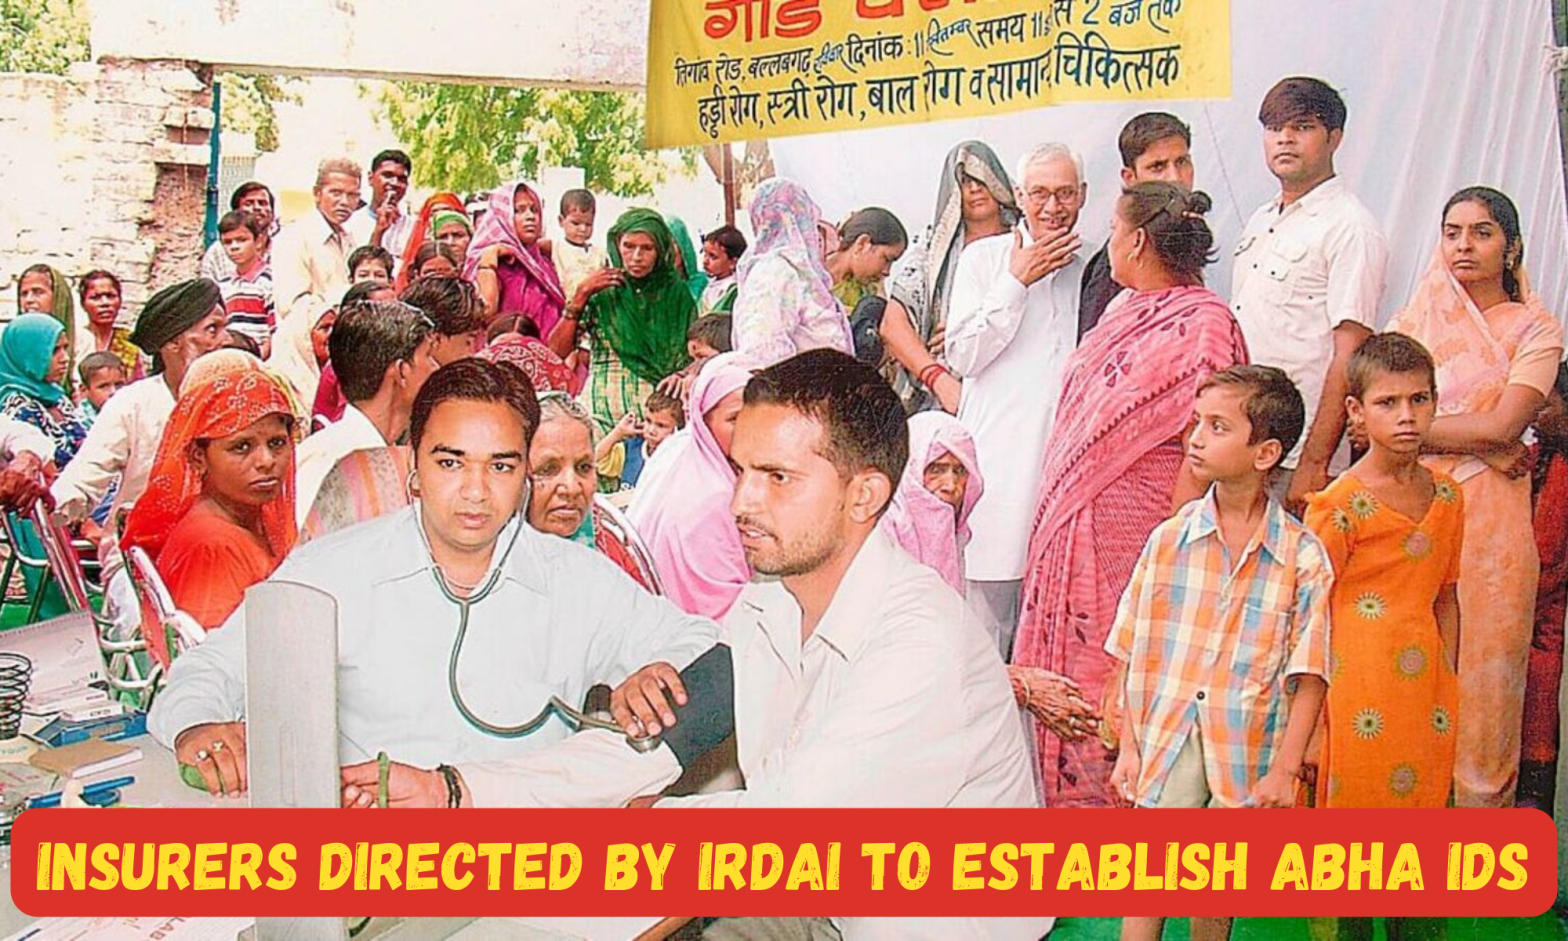 Insurers directed by IRDAI to establish ABHA IDs